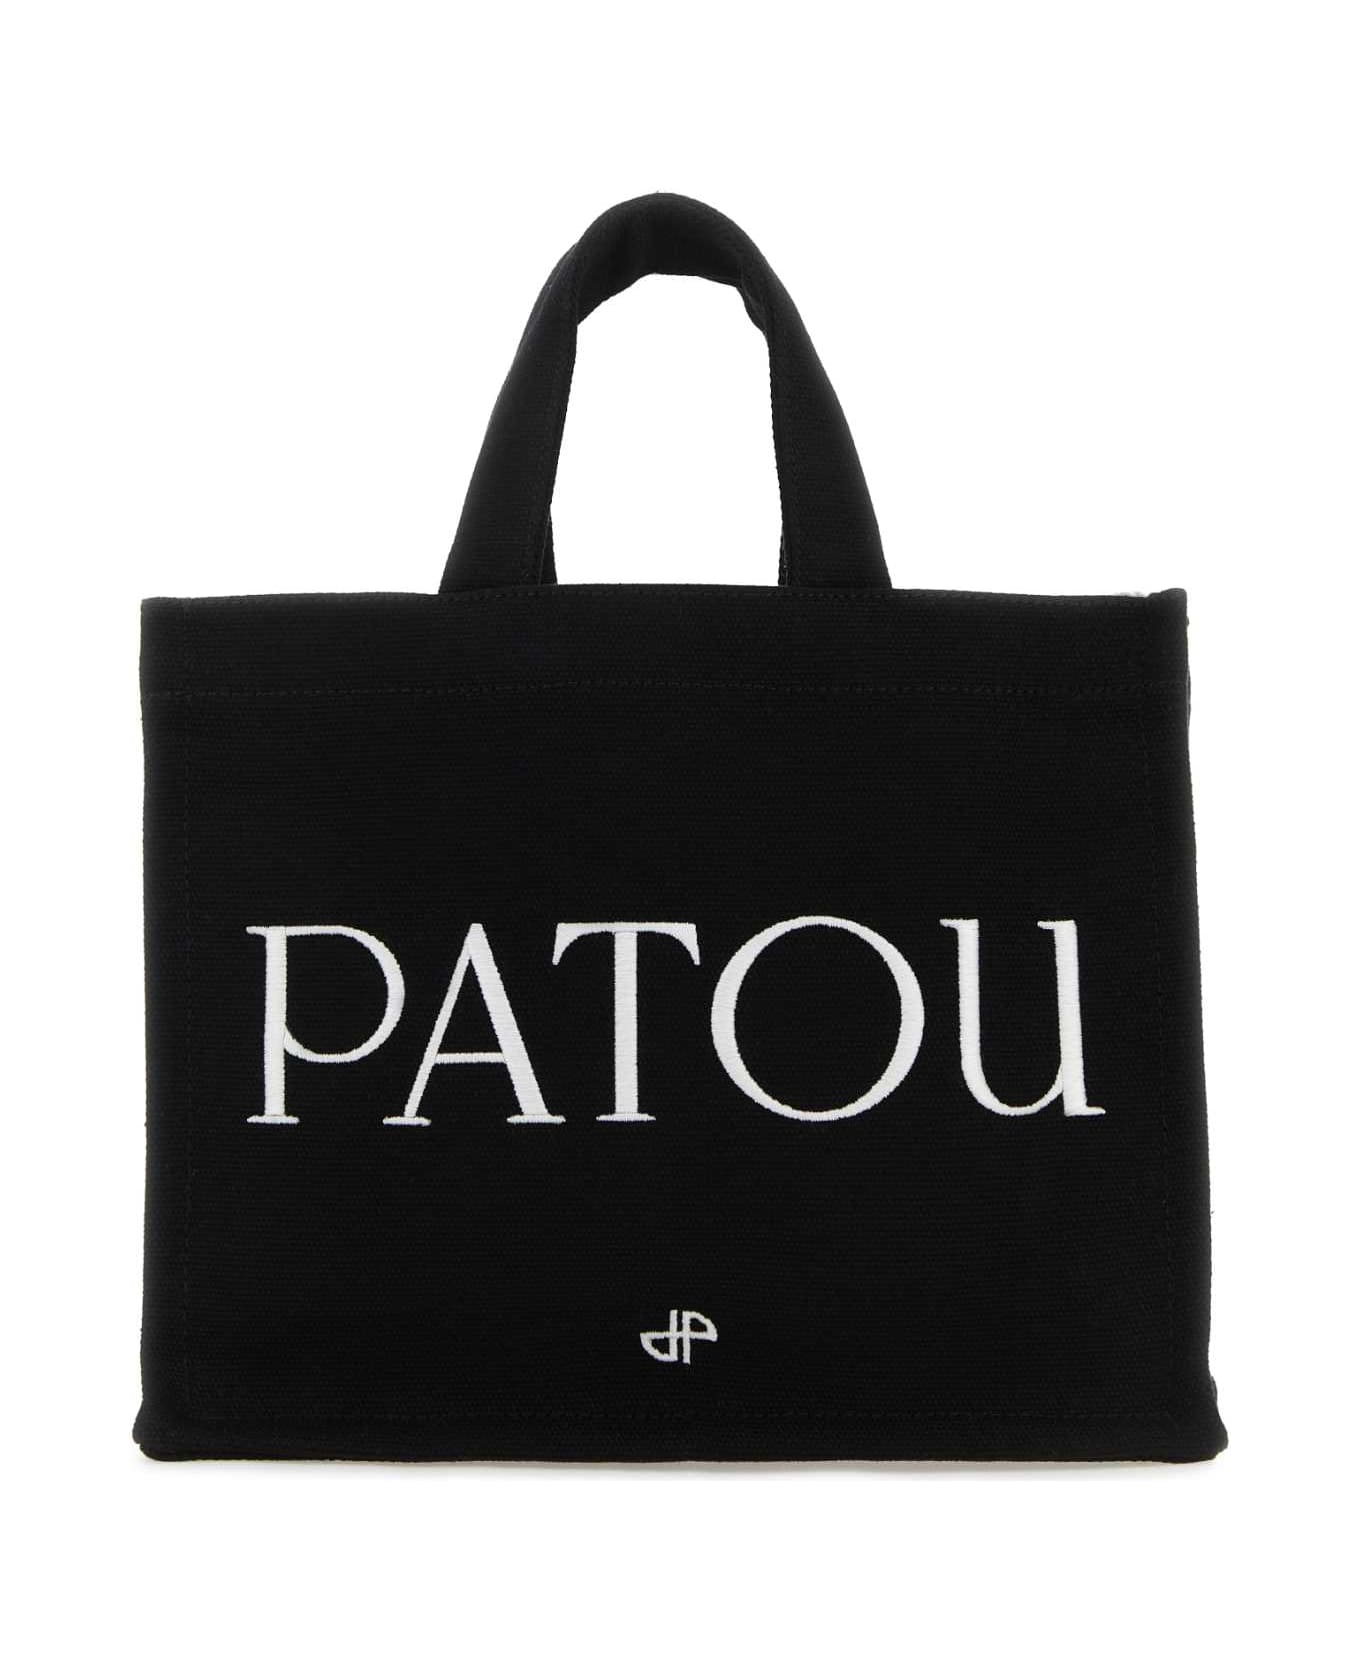 Patou Black Canvas Small Tote Patou Shopping Bag - BLACK トートバッグ